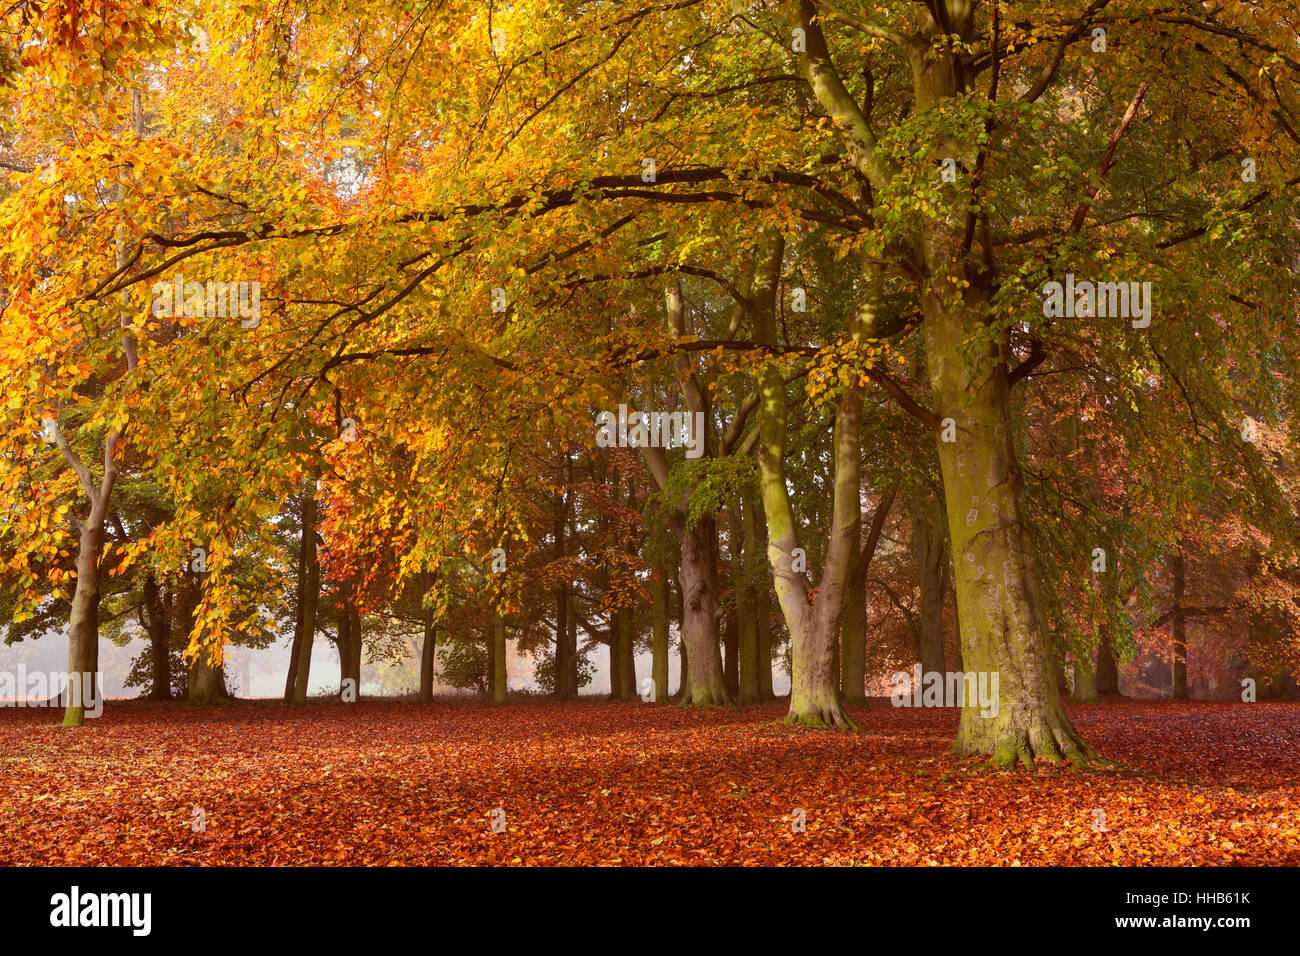 Baysgarth Park, Barton-upon-Humber, Nord du Lincolnshire, au Royaume-Uni. L'automne, novembre 2015. Banque D'Images